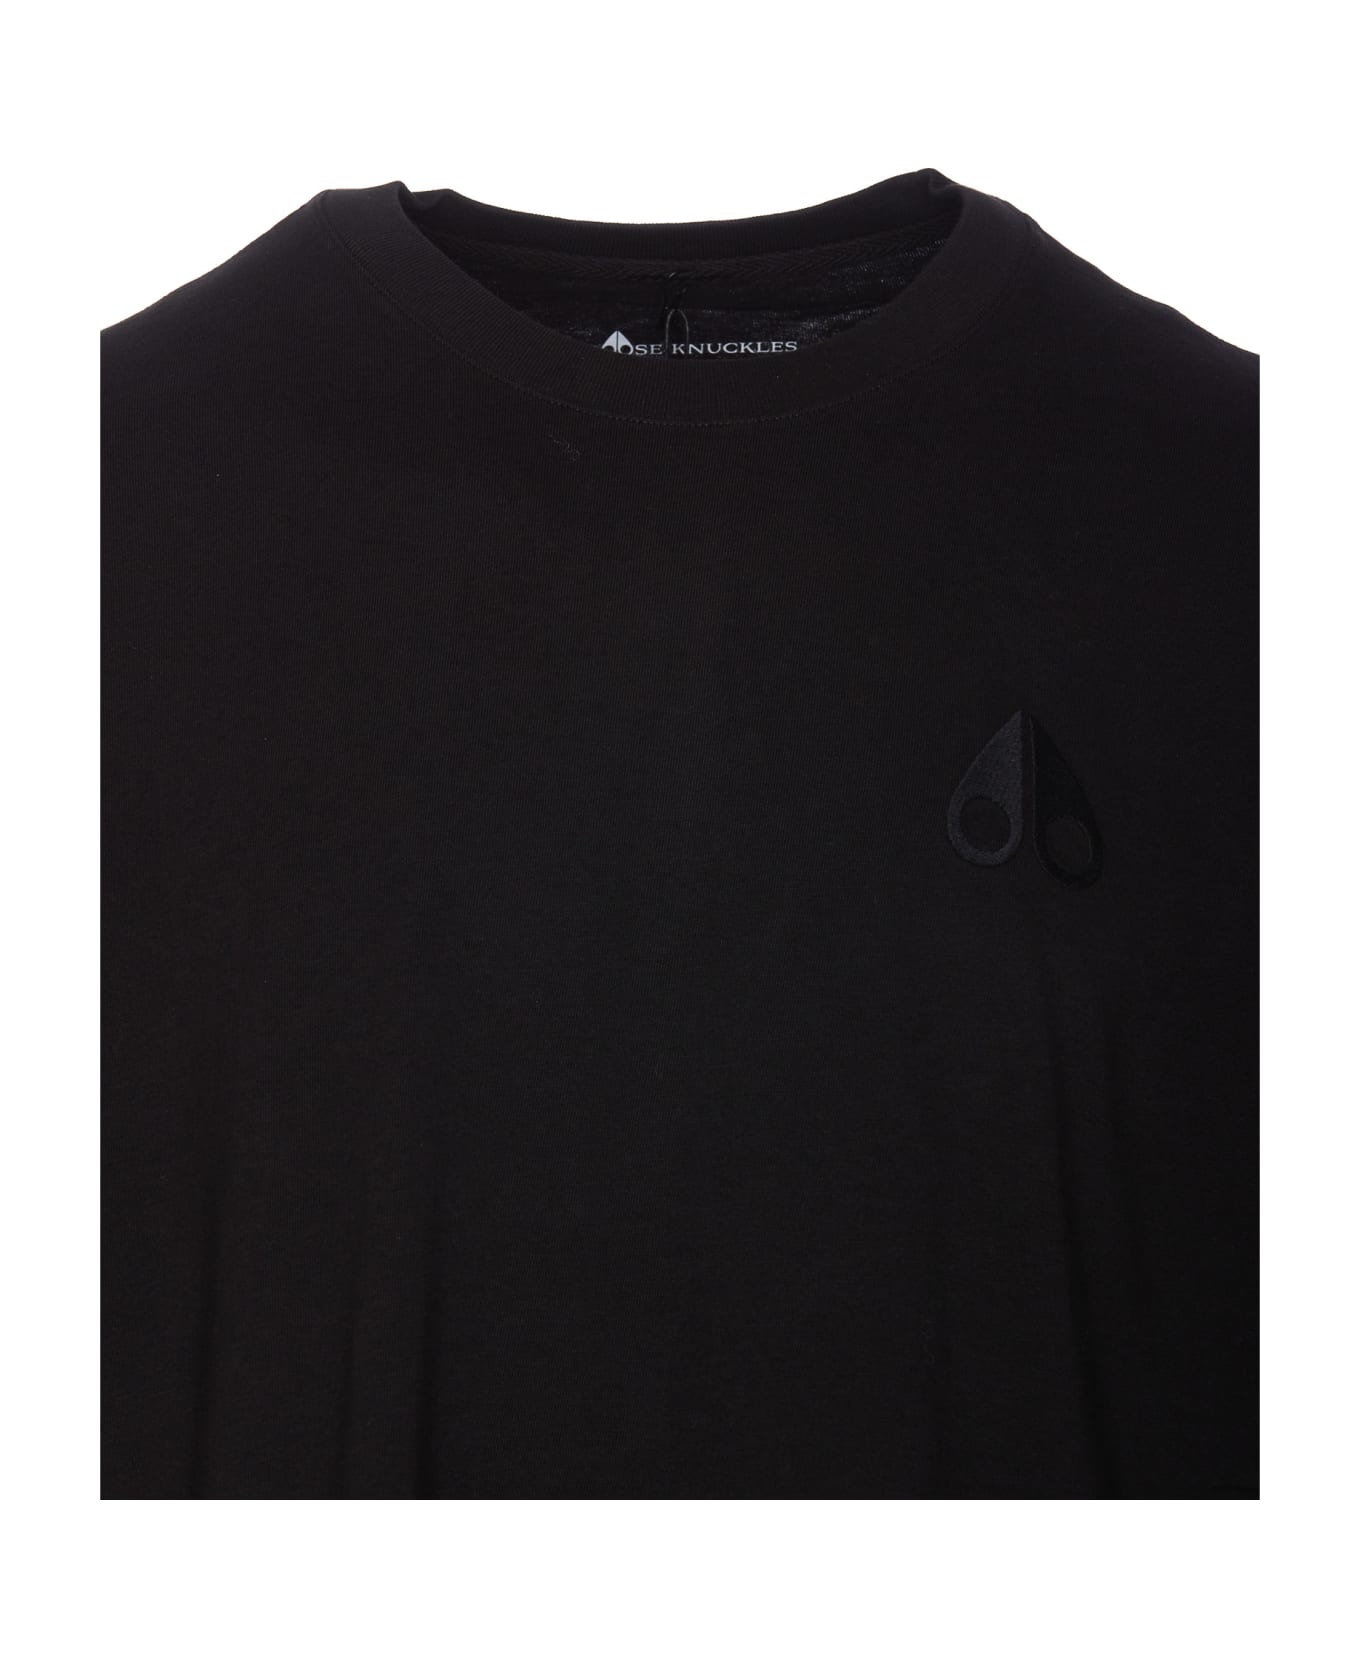 Moose Knuckles Henri T-shirt - Black